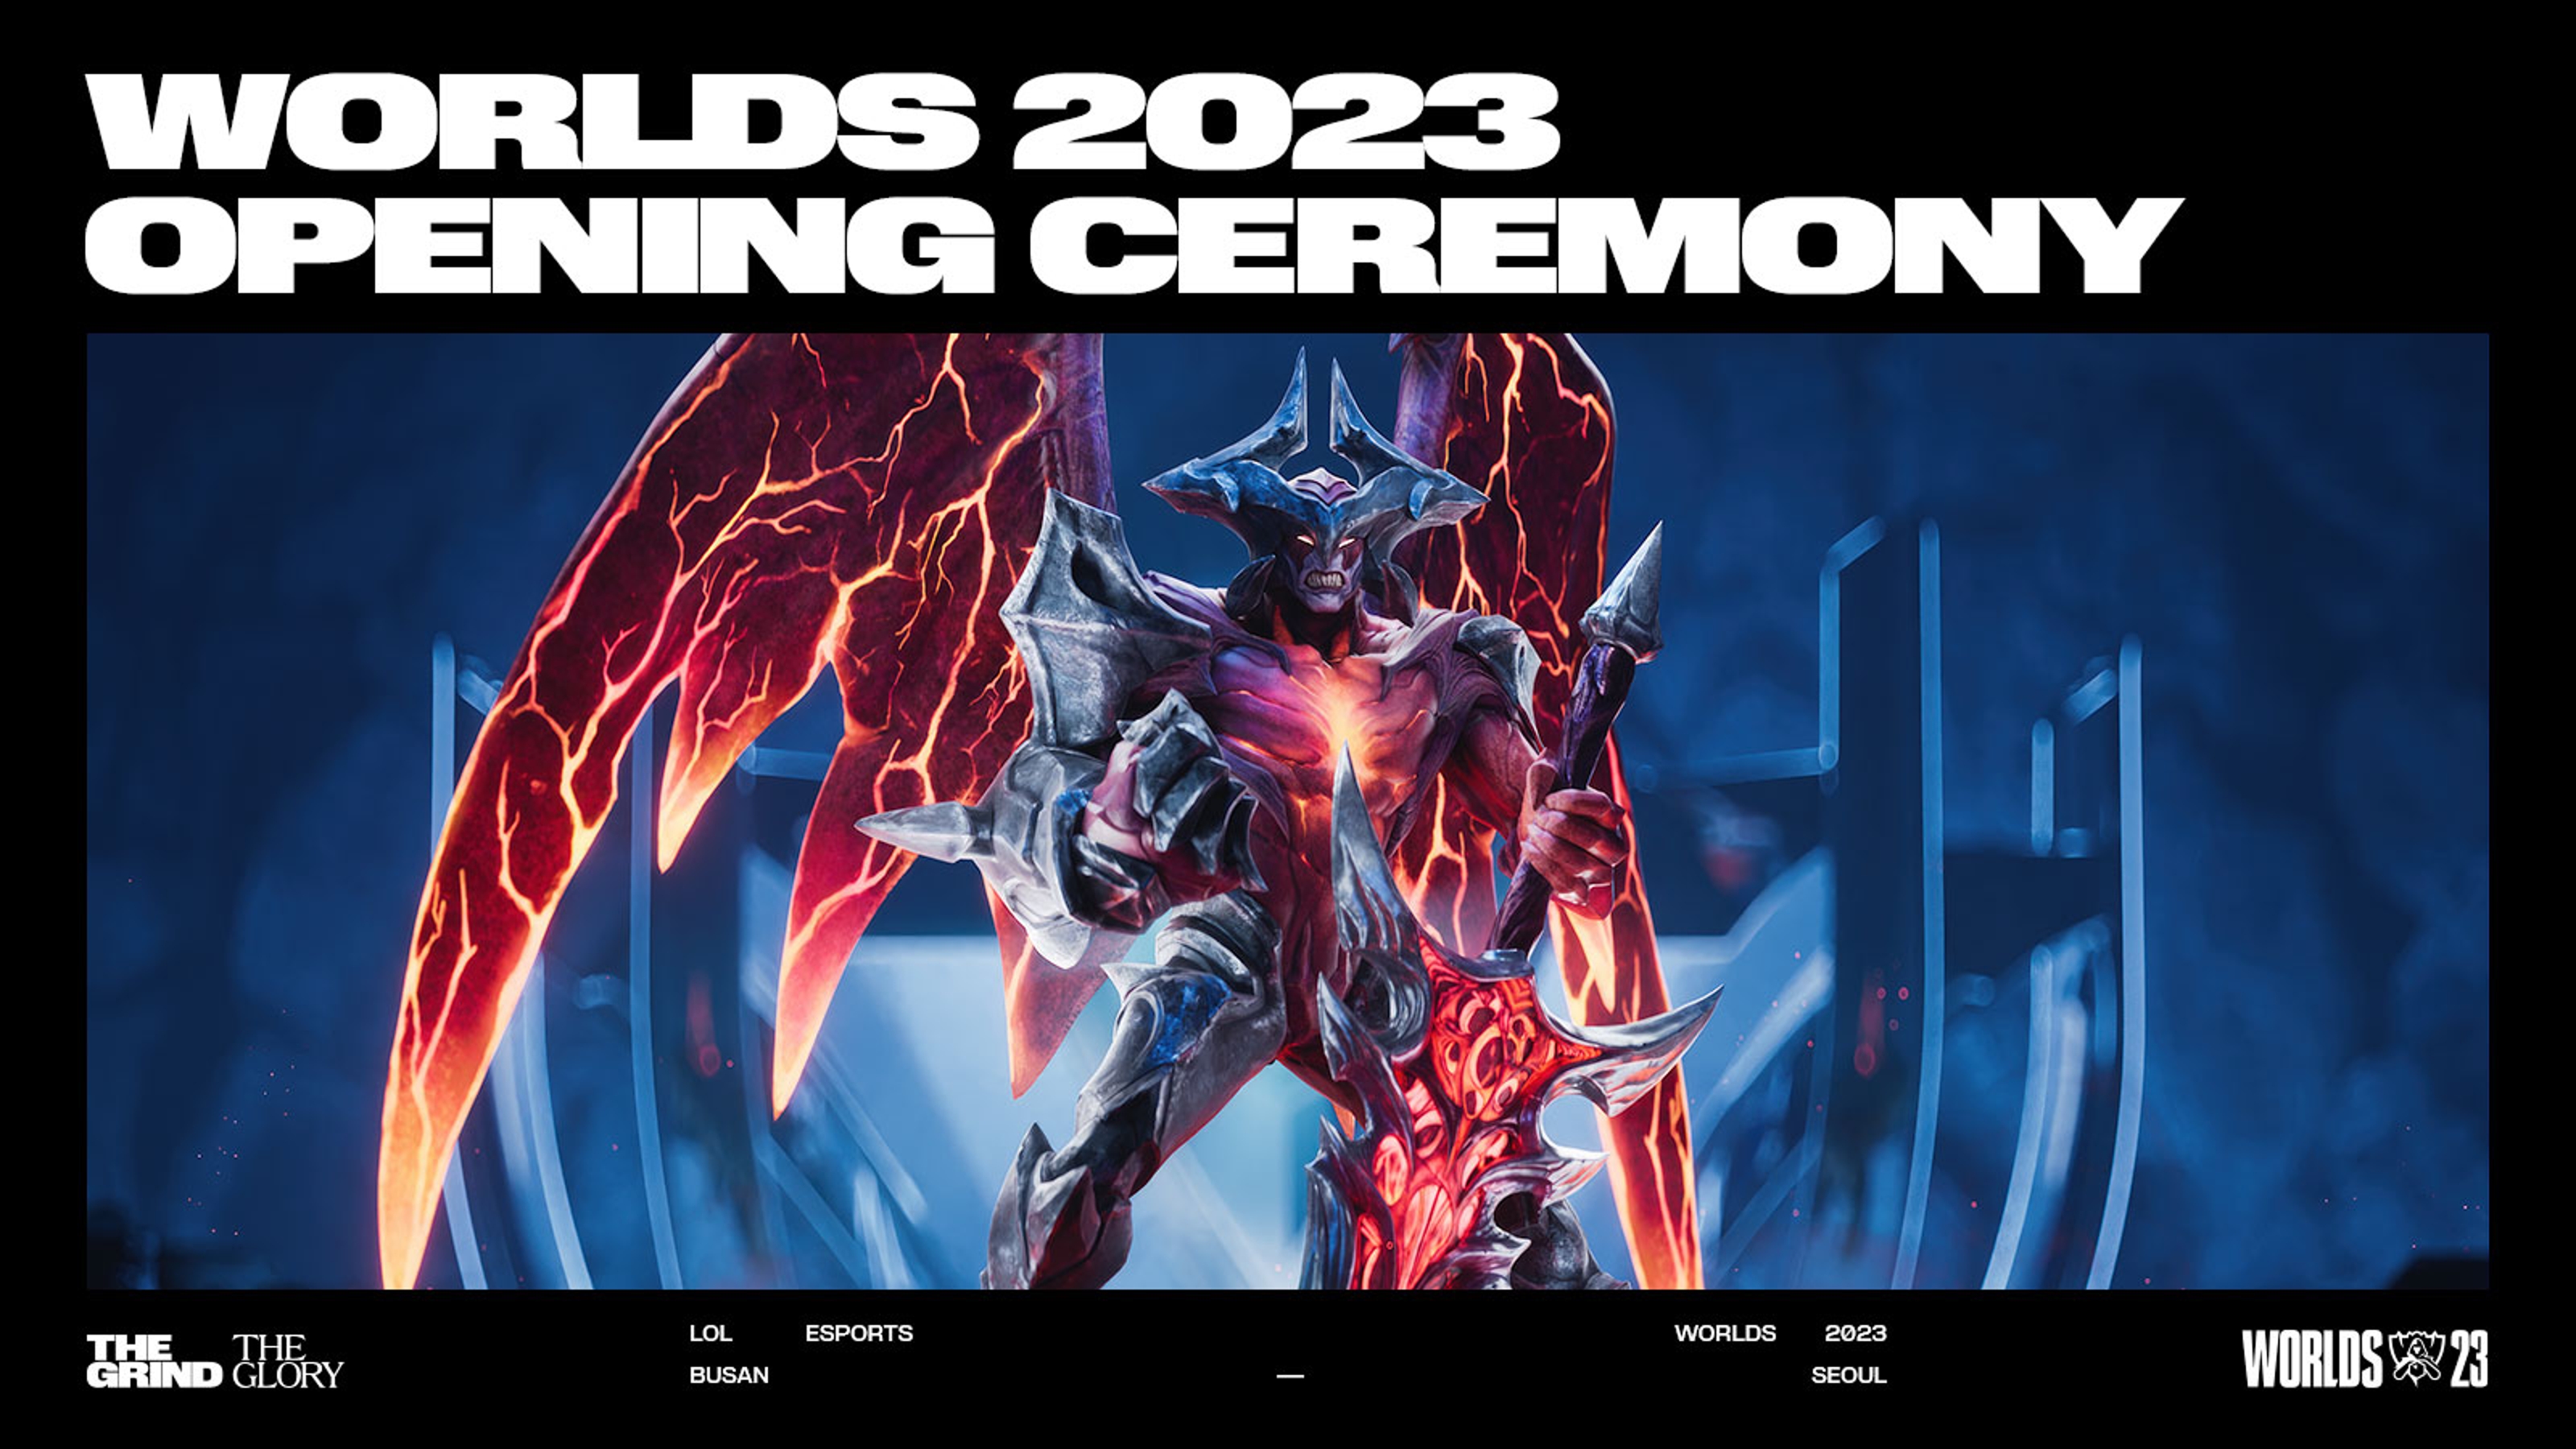 Mundial LOL 2023  Fique por de Todos Detalhes da Worlds 2023 (PT)